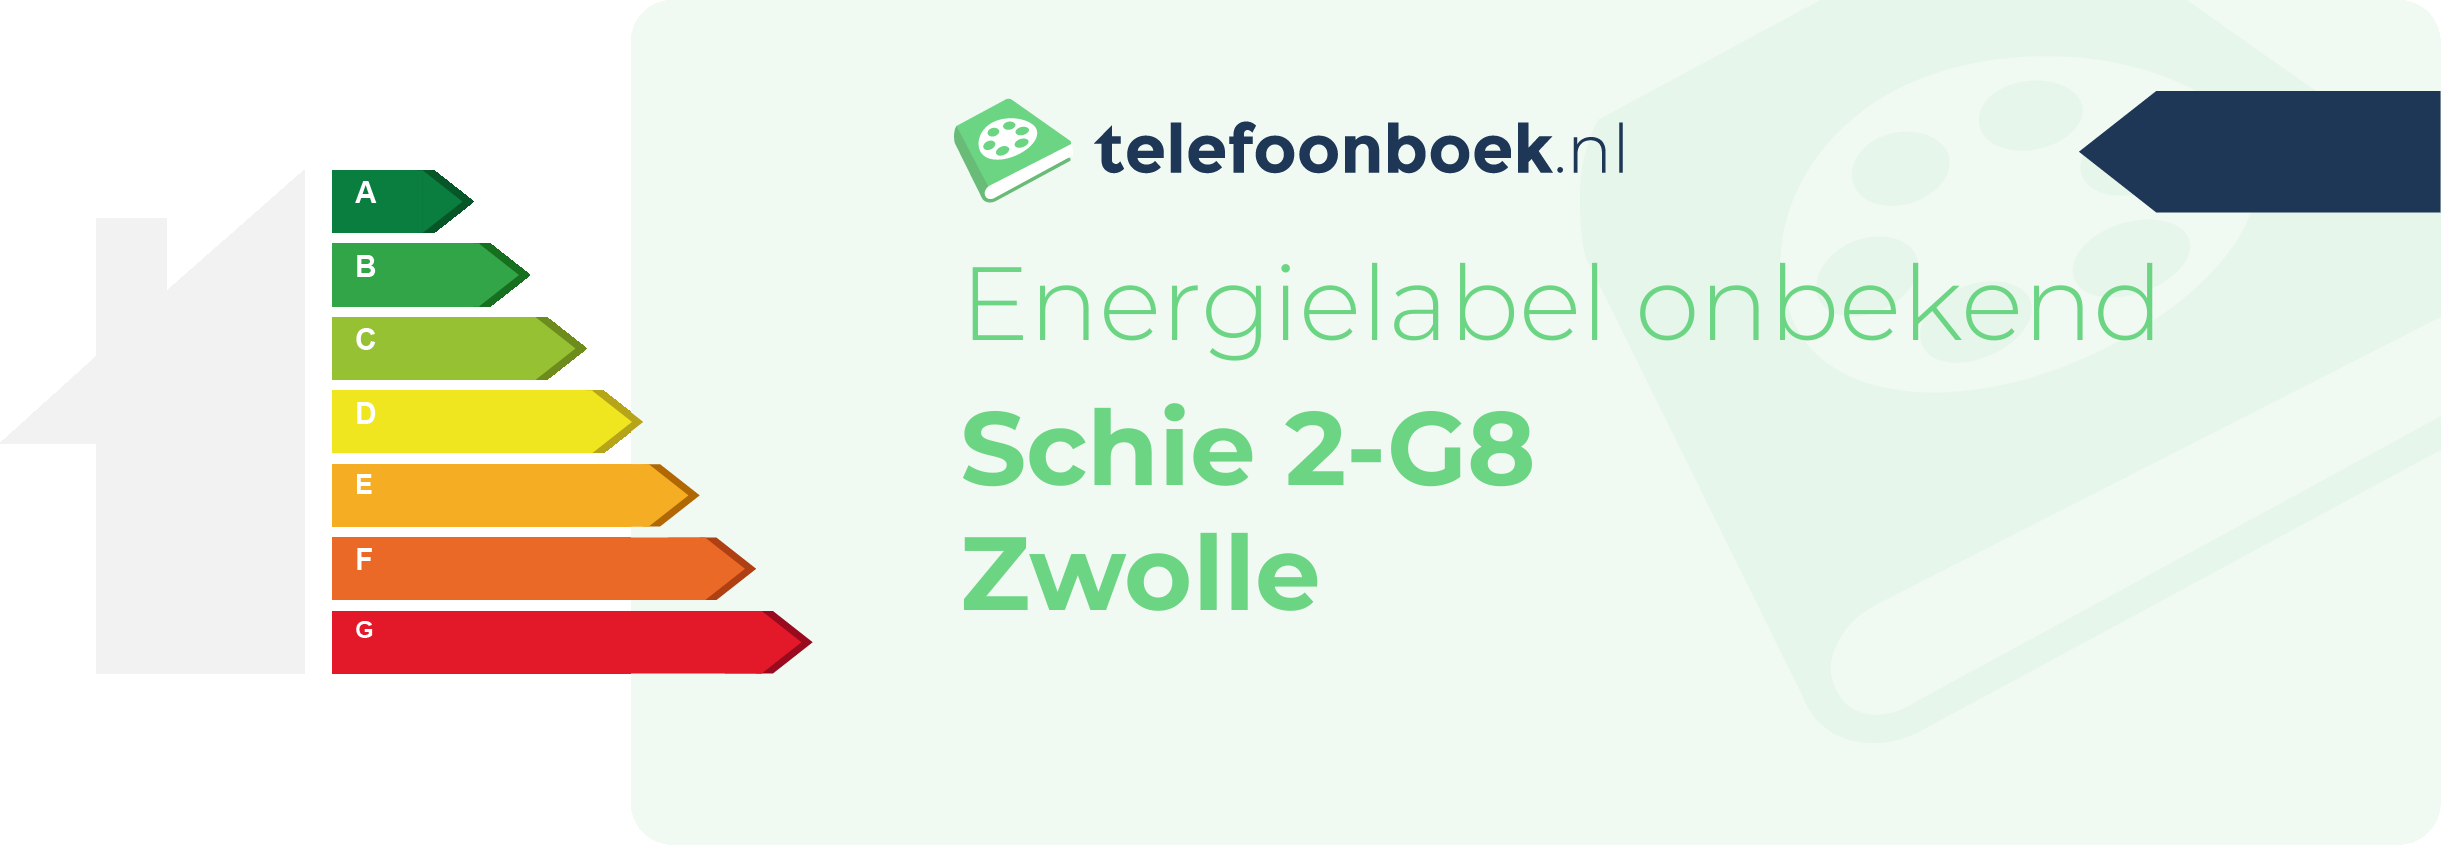 Energielabel Schie 2-G8 Zwolle